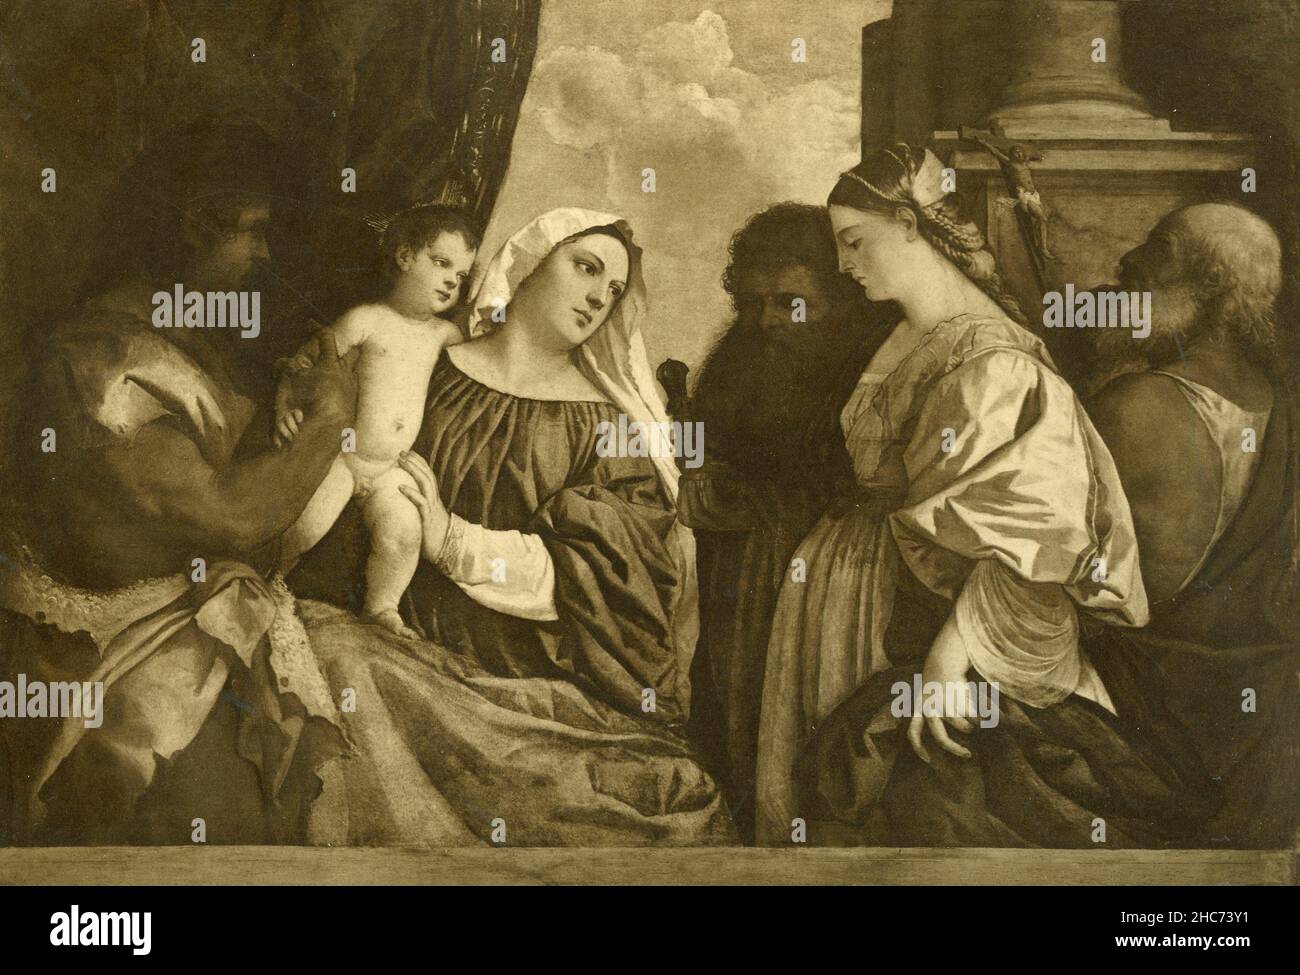 La Vierge Marie avec l'enfant et les quatre Saints, peinture de l'artiste italien Tiziano Vecellio, Munich 1897 Banque D'Images